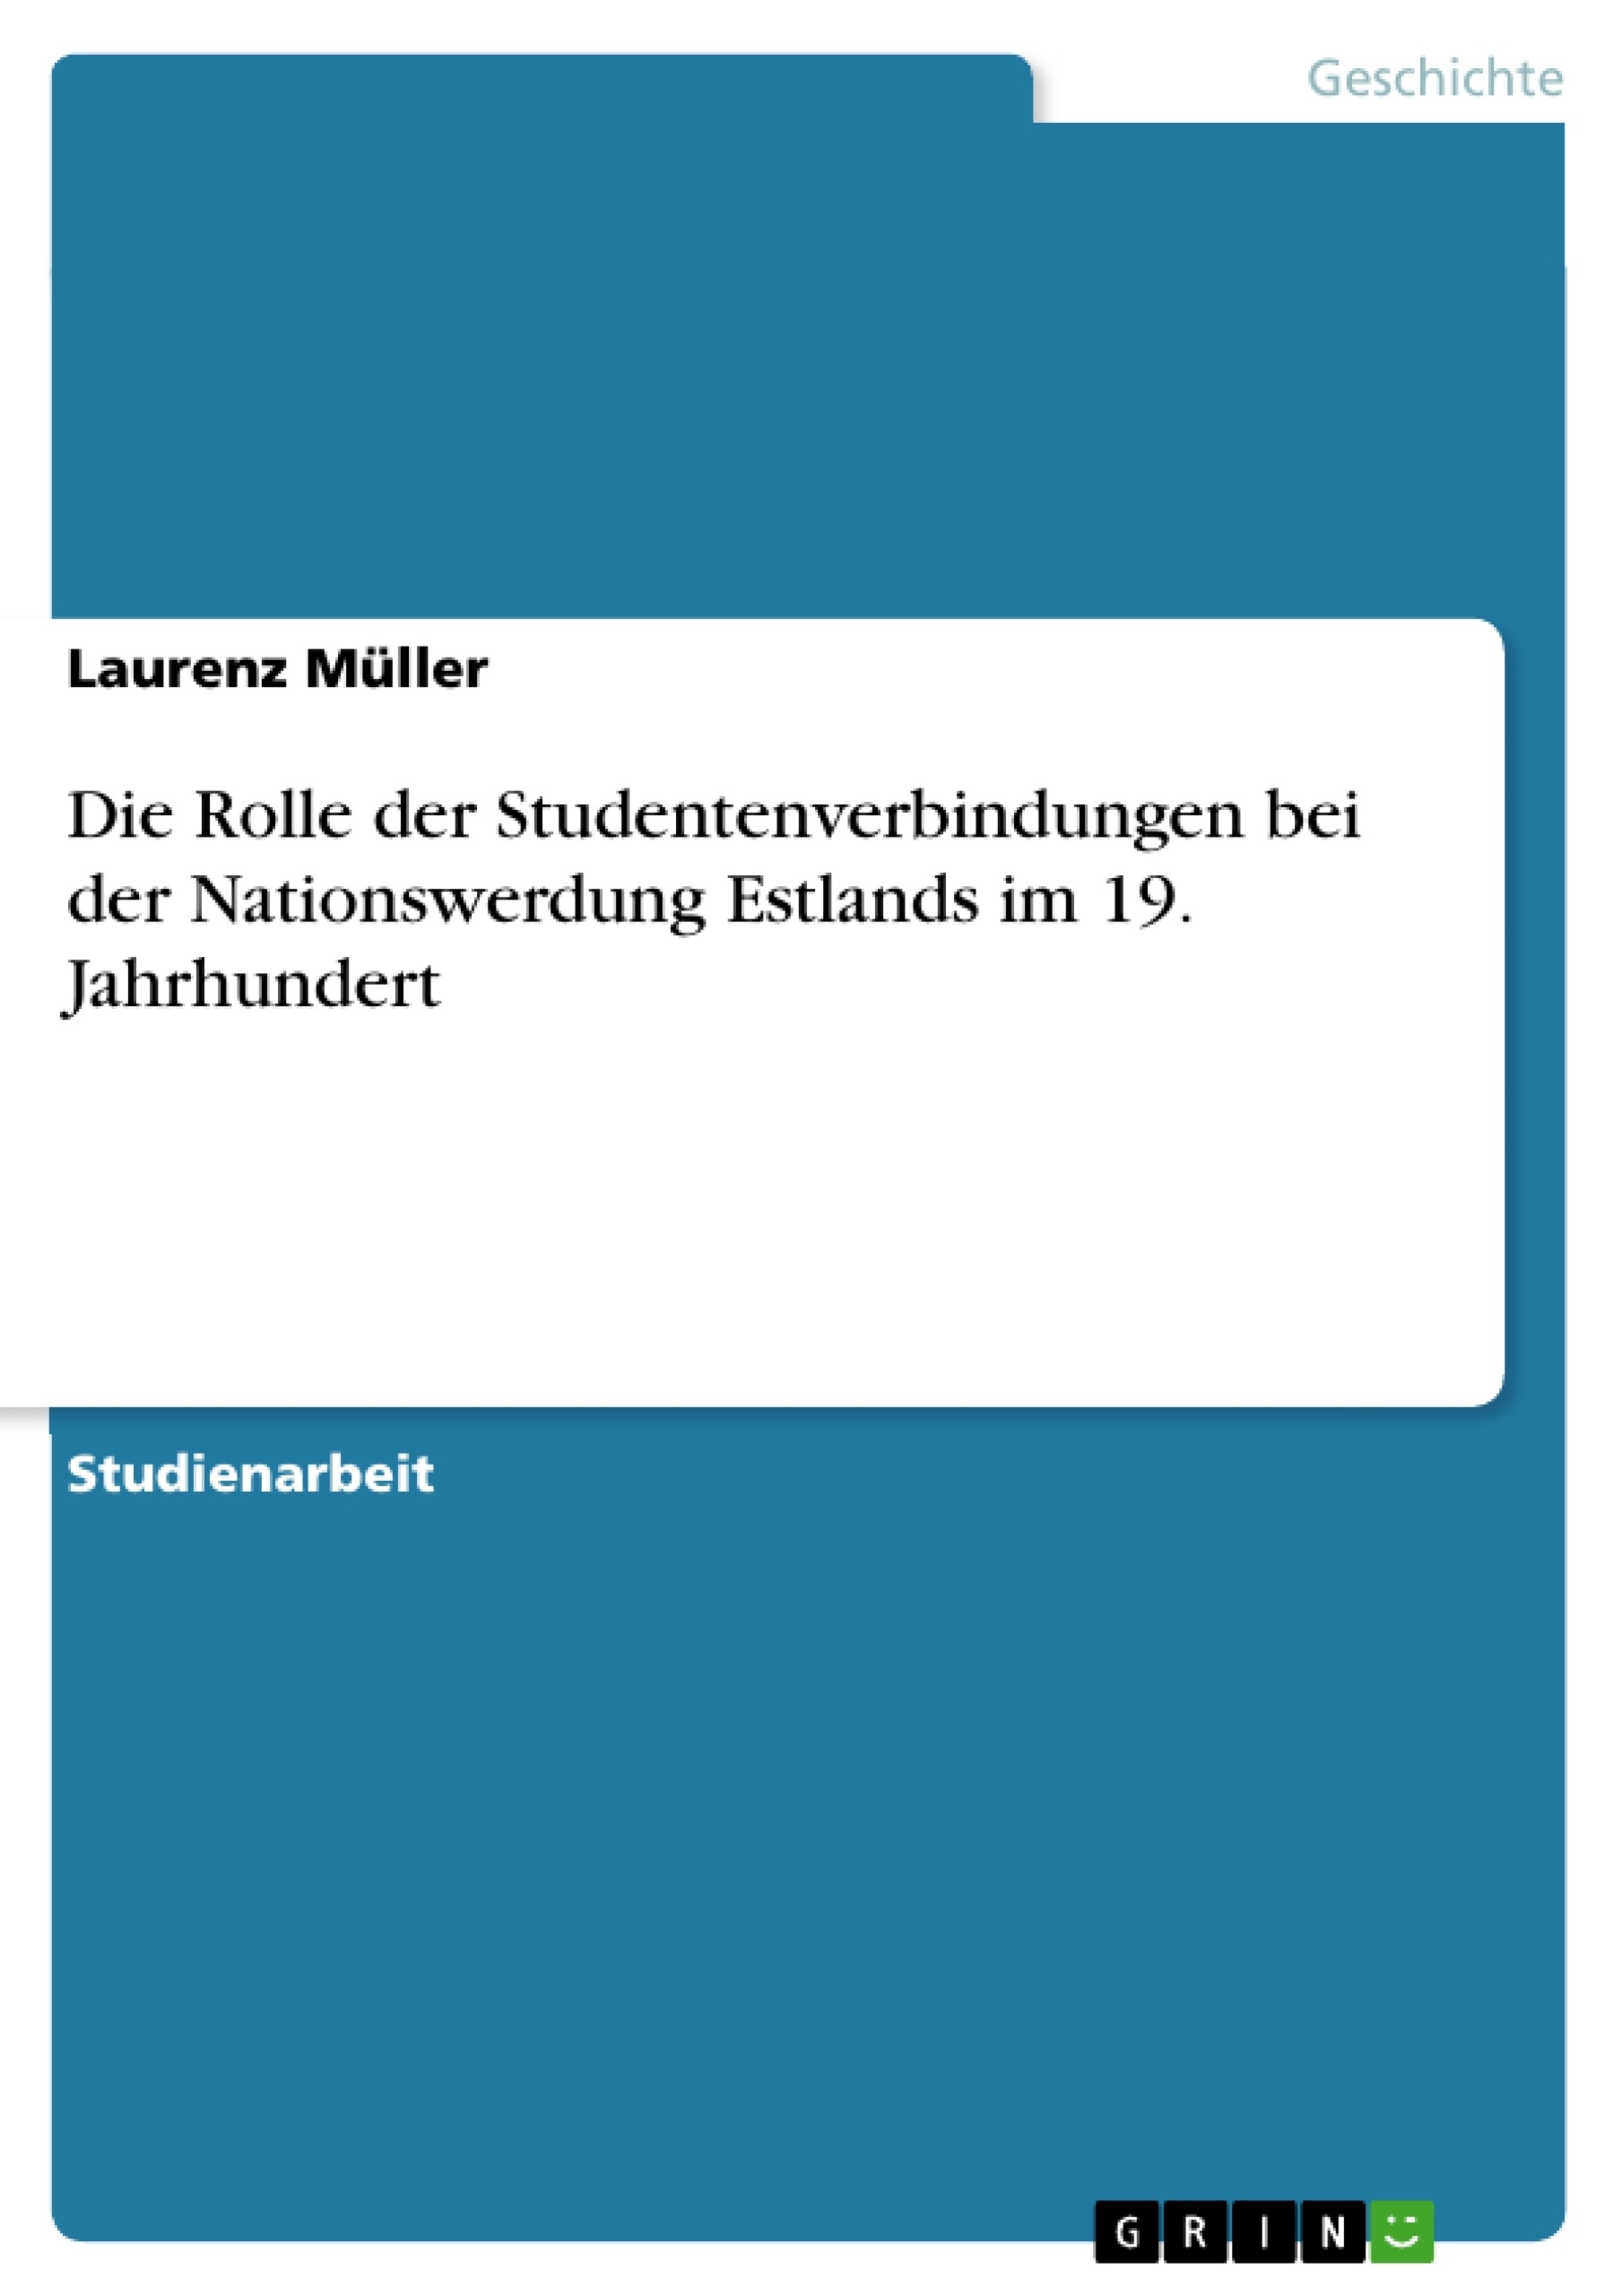 Título: Die Rolle der Studentenverbindungen bei der Nationswerdung Estlands im 19. Jahrhundert